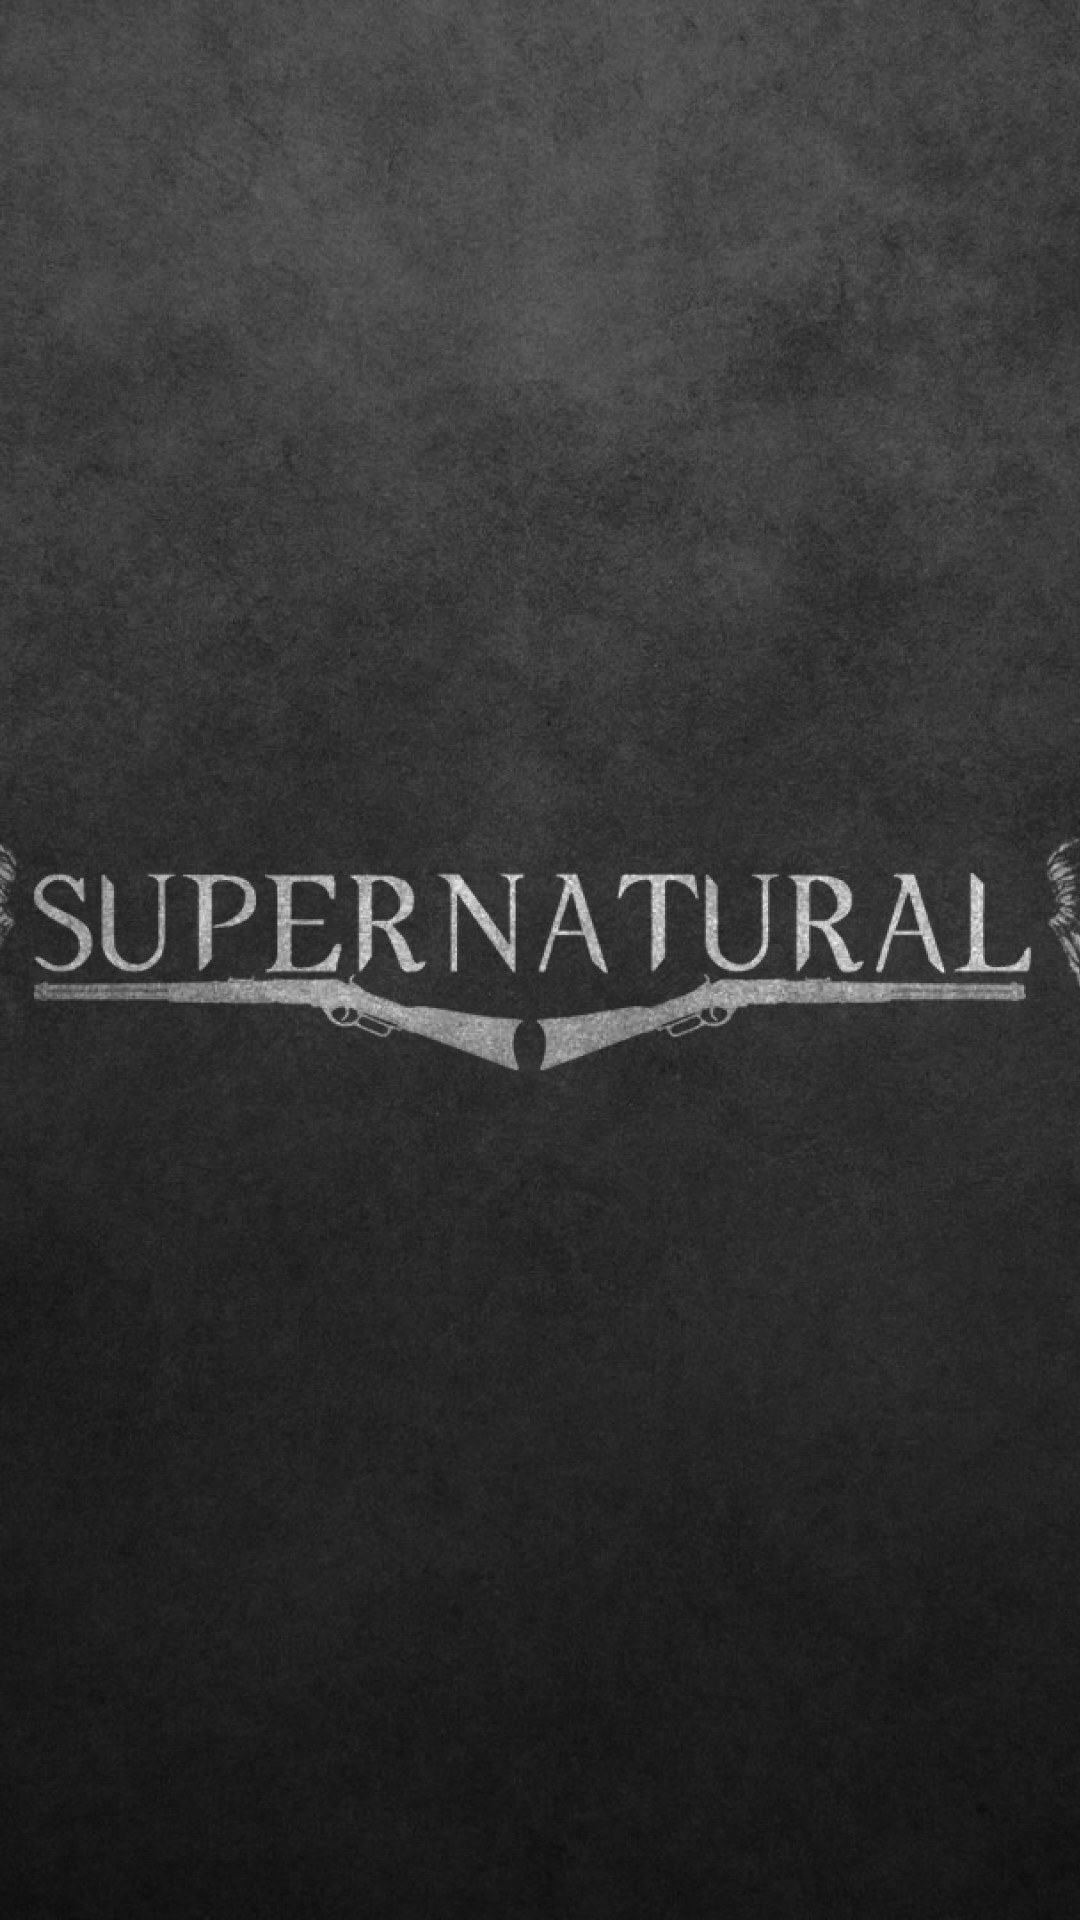 Supernatural wallpaper tumblr – Googleda Ara